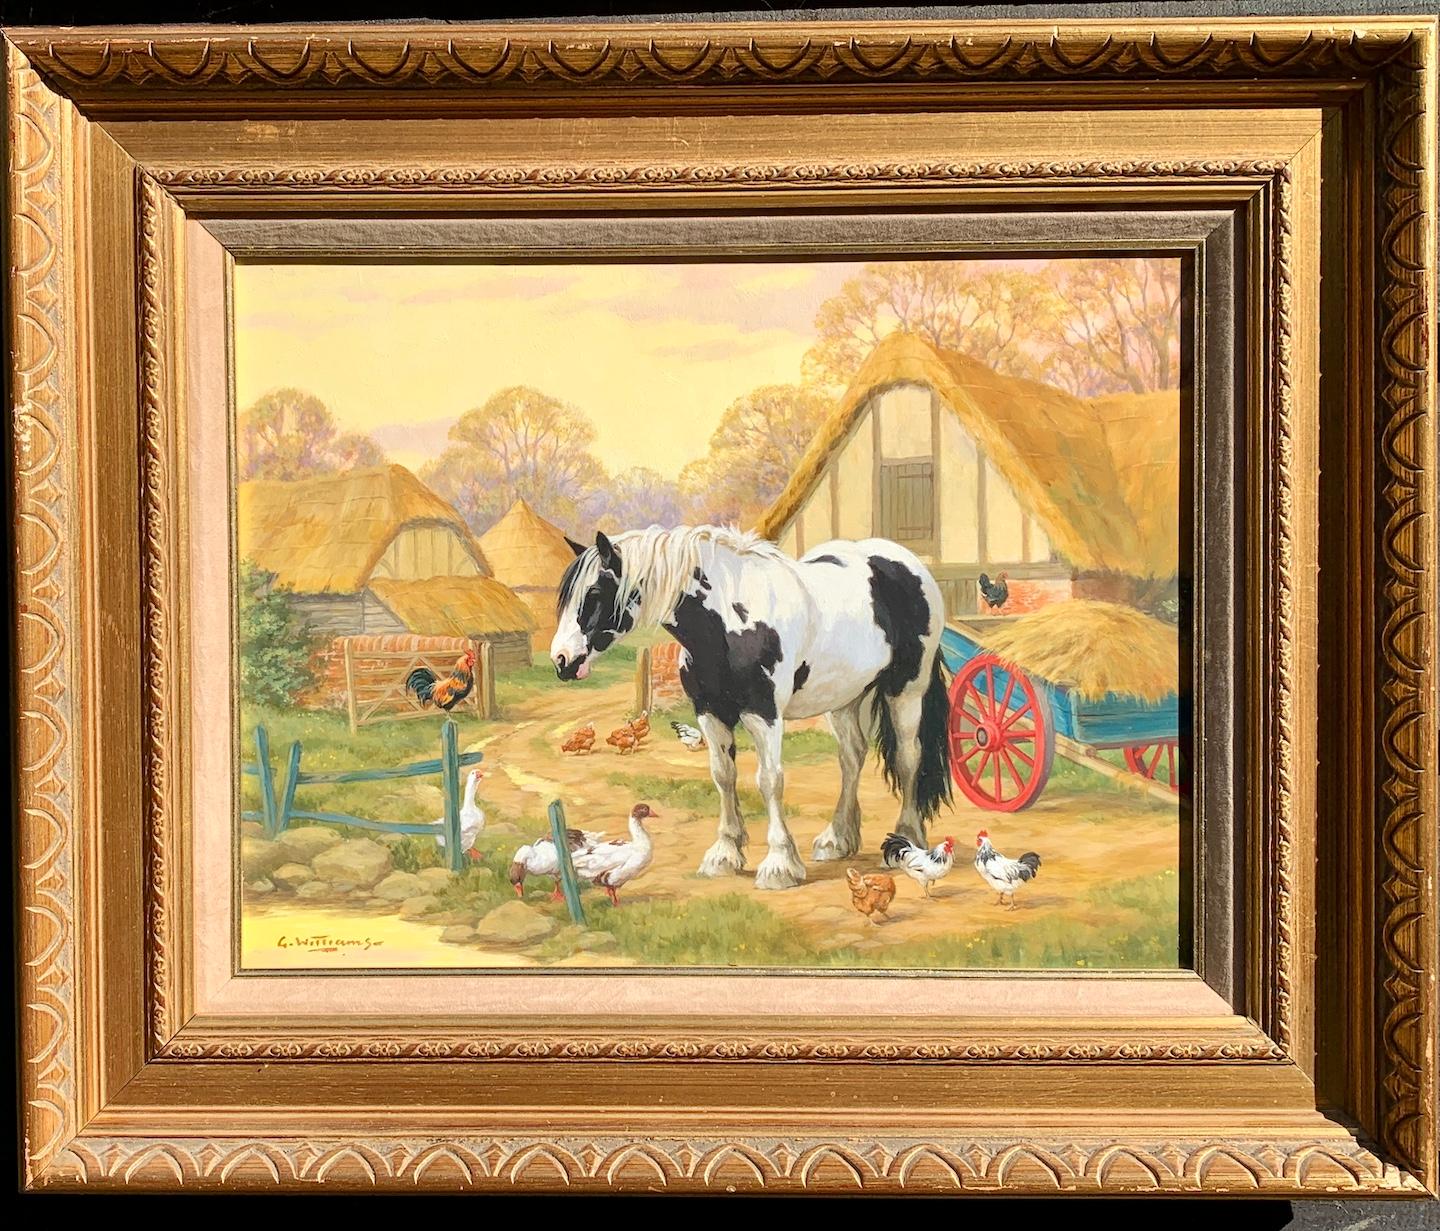 Animal Painting Glynn Williams - Scène de ferme anglaise avec un cheval de ferme, des poulets, des canards et un chalet perché